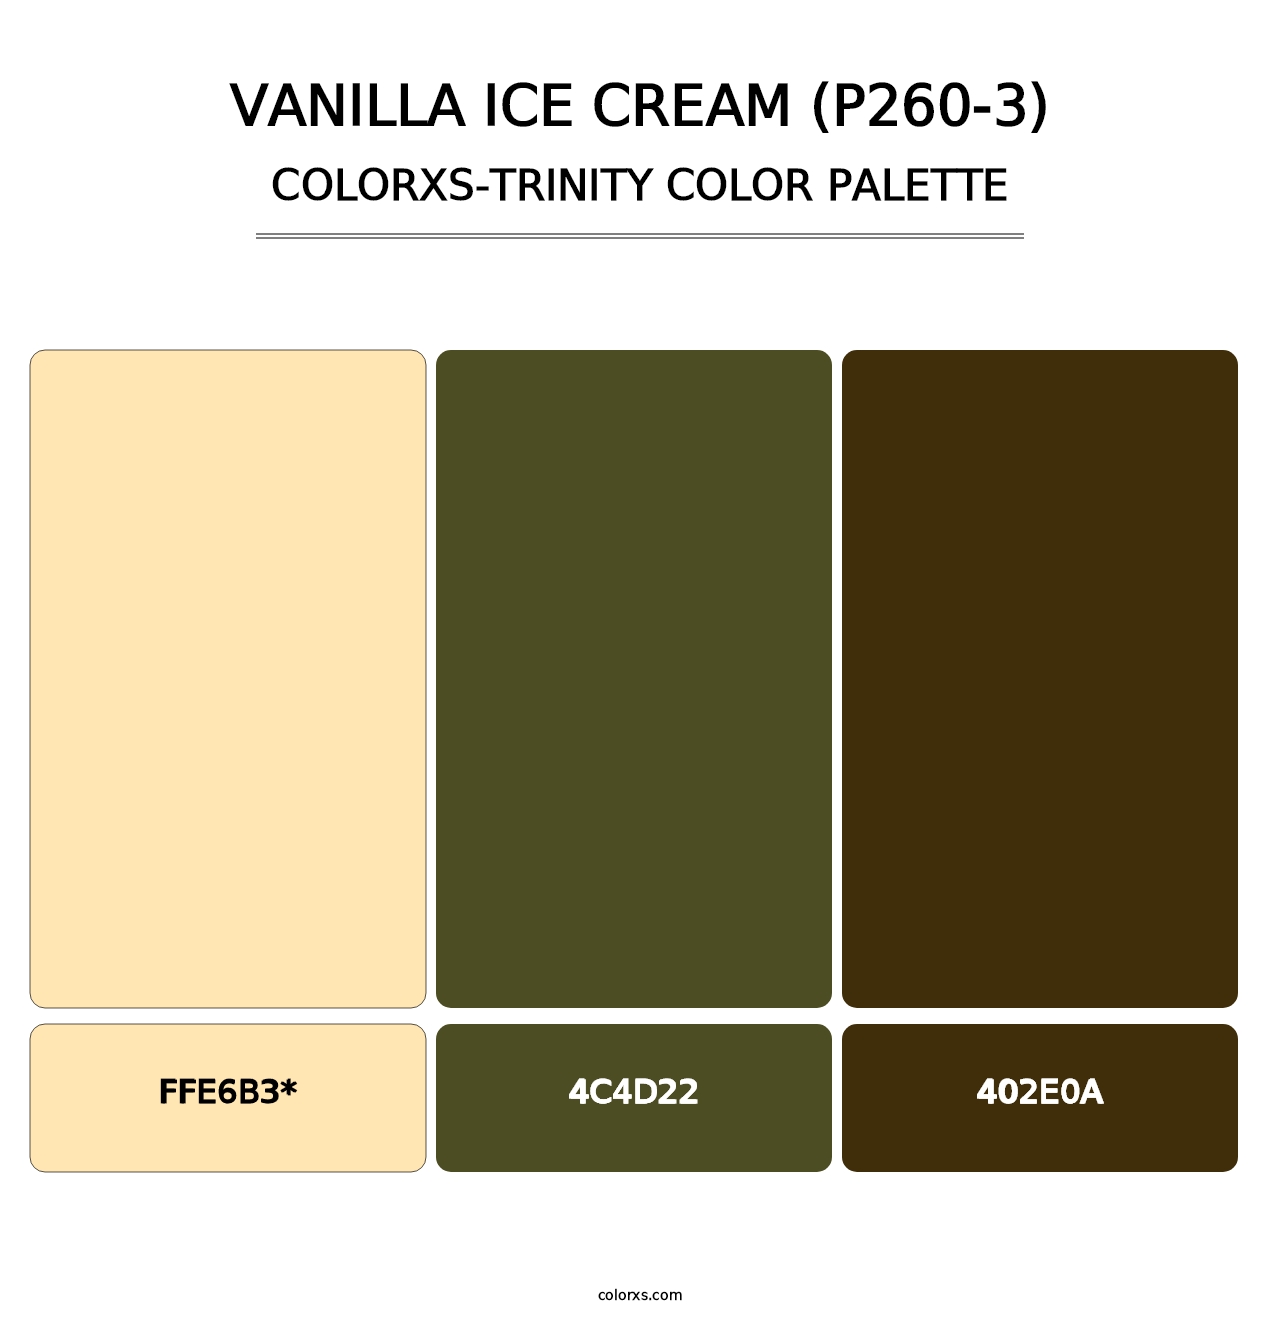 Vanilla Ice Cream (P260-3) - Colorxs Trinity Palette